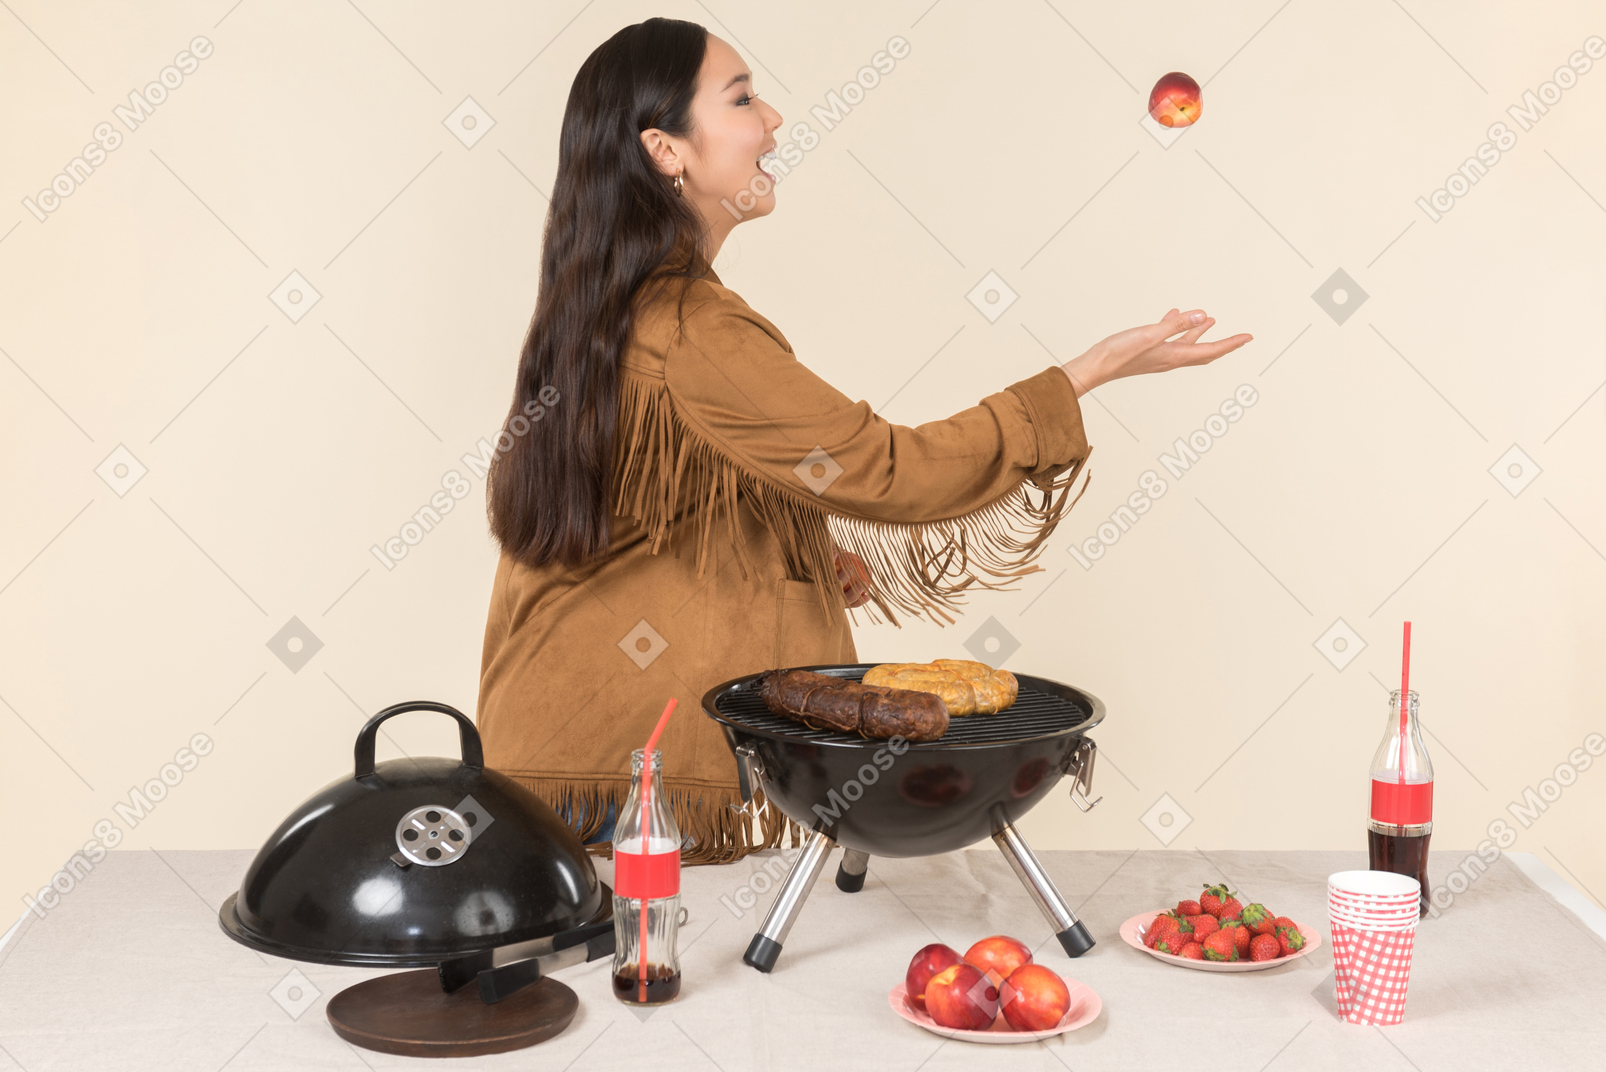 Jeune femme asiatique debout près de la grille et jetant un fruit